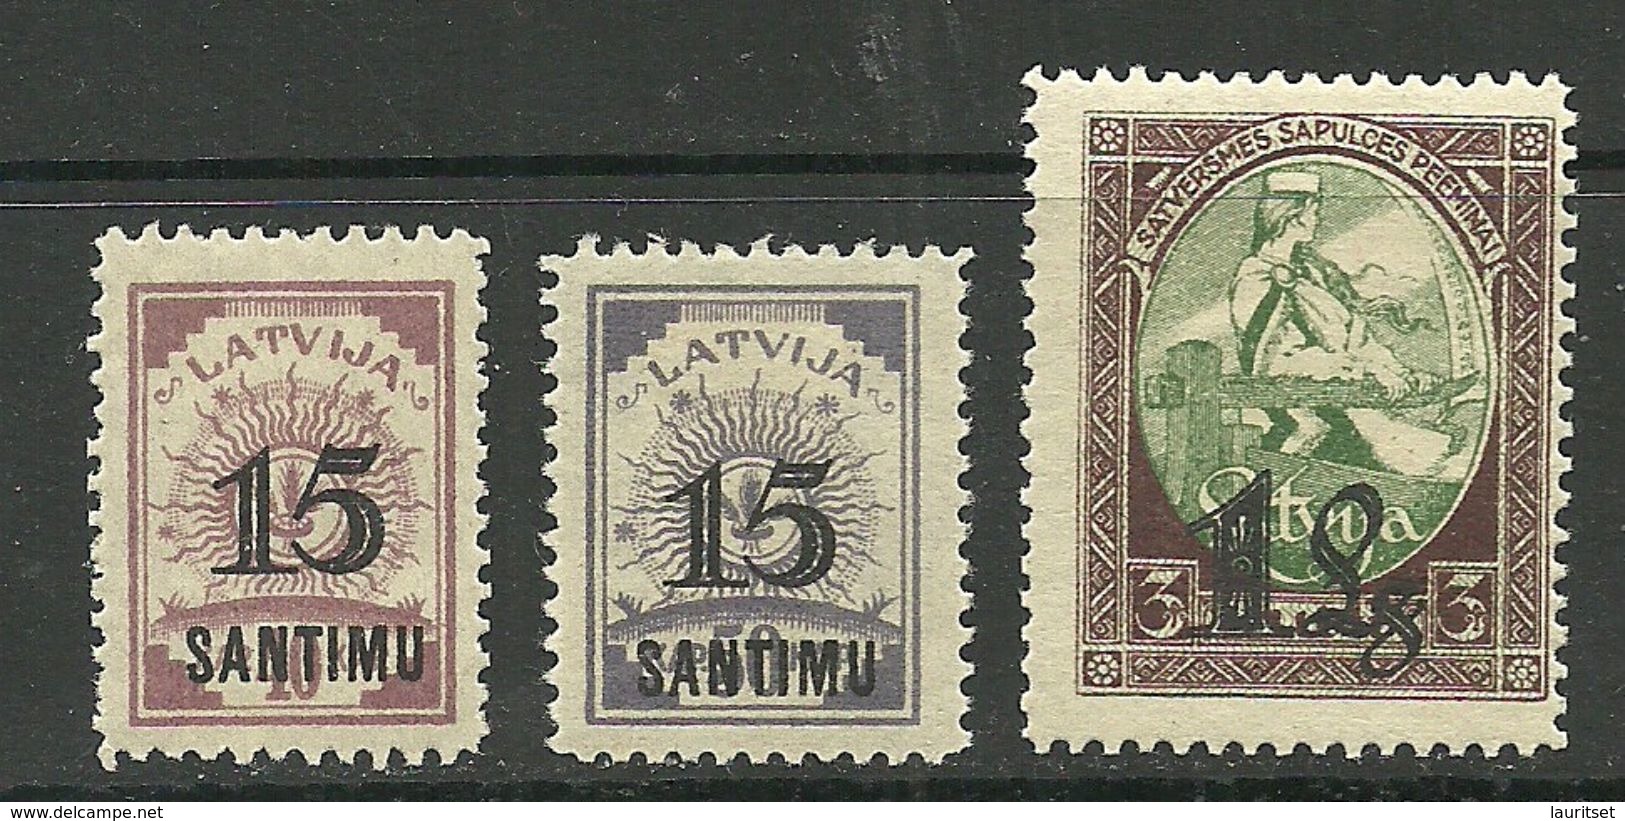 LETTLAND Latvia 1927 Michel 114 - 116 * - Latvia